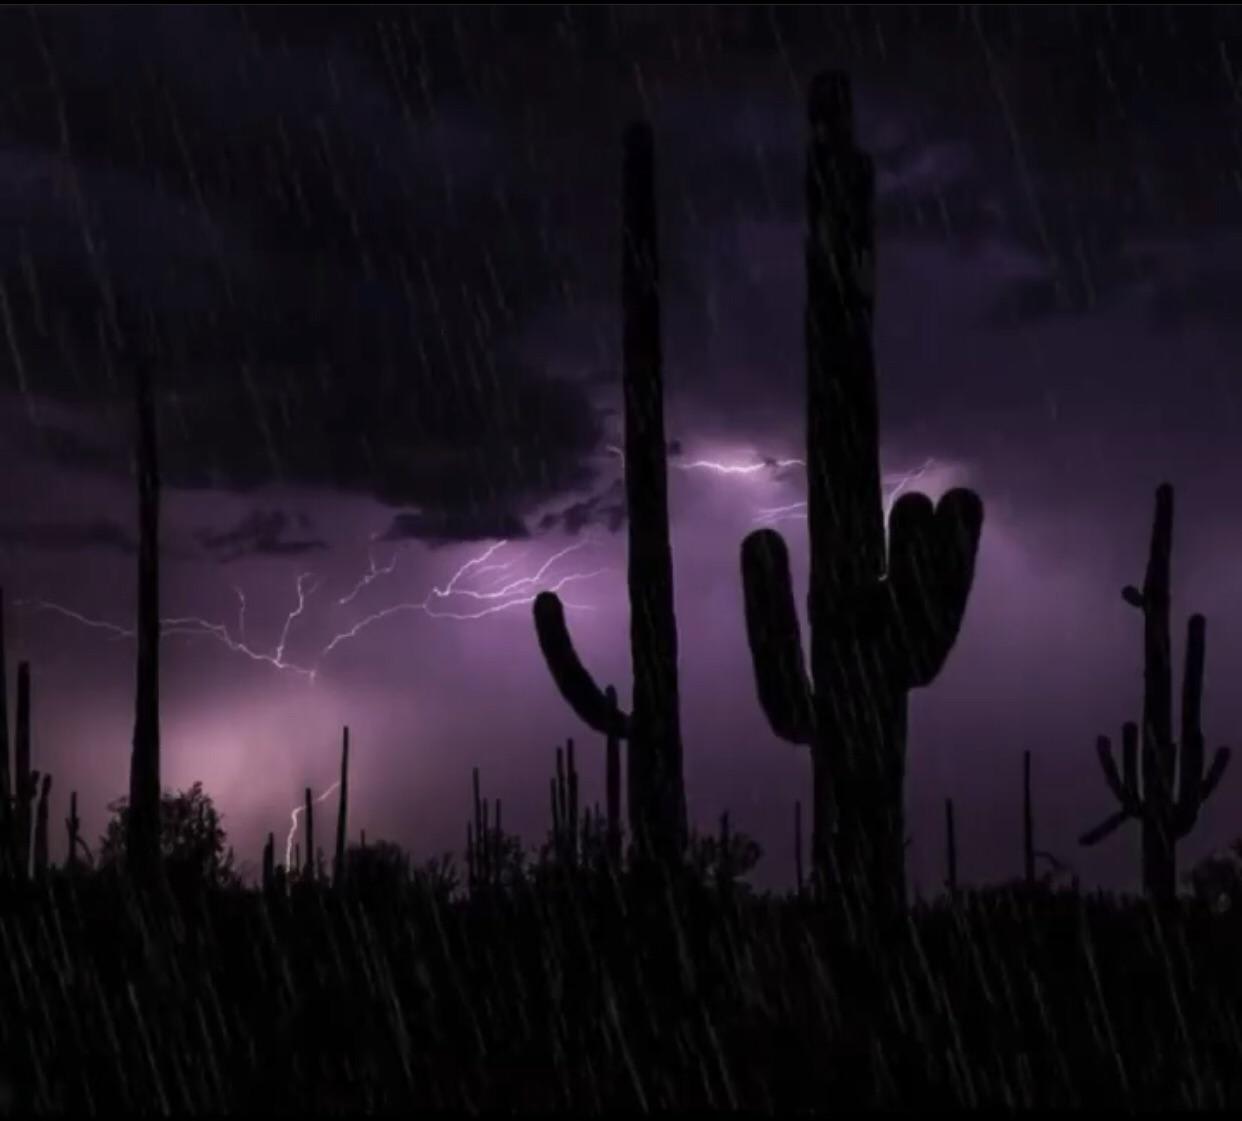 Rain in Tucson Arizona